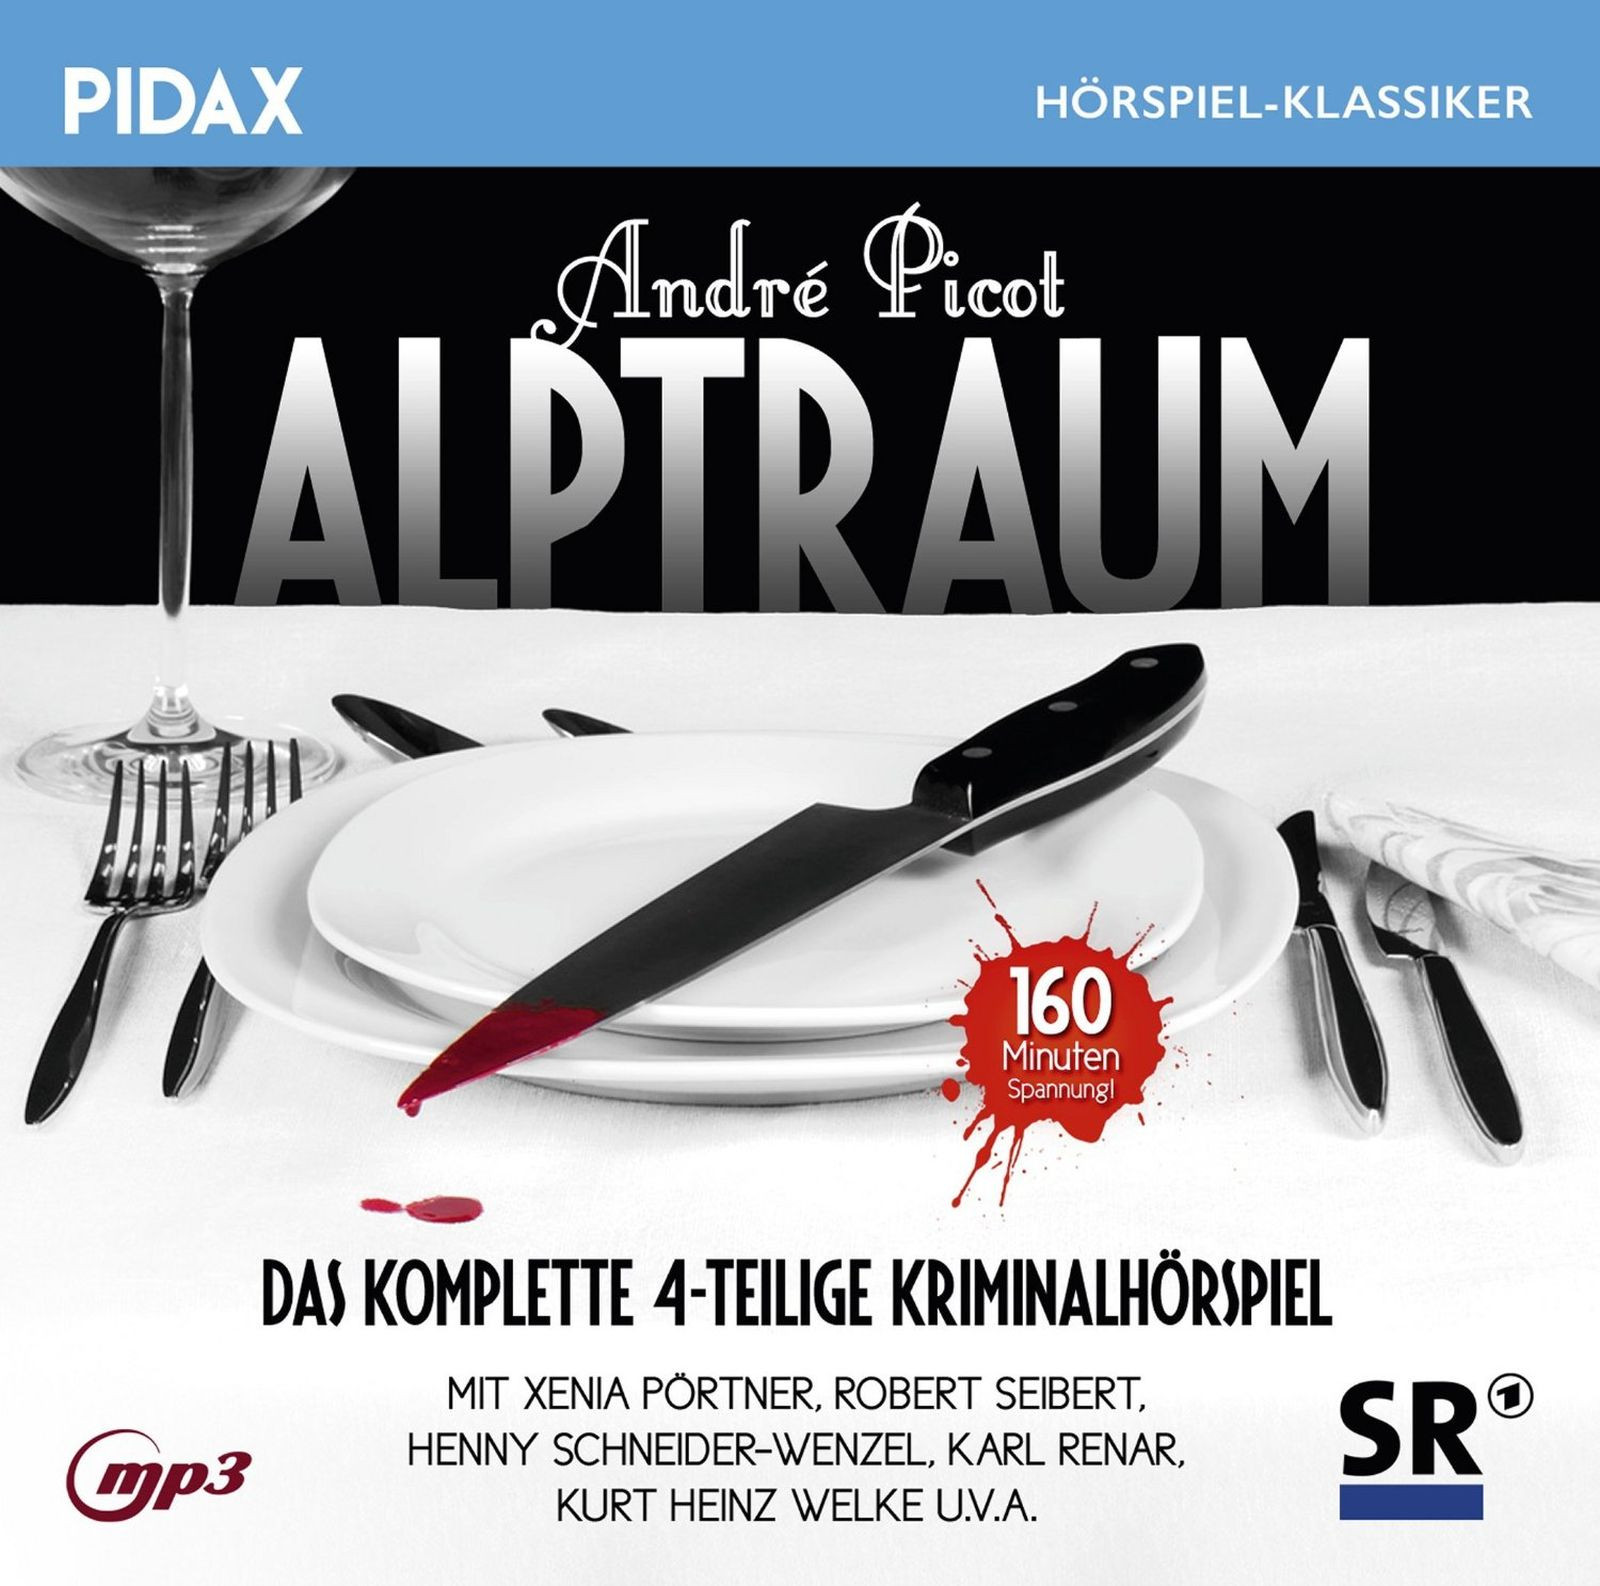 Pidax Hörspiel Klassiker - Alptraum